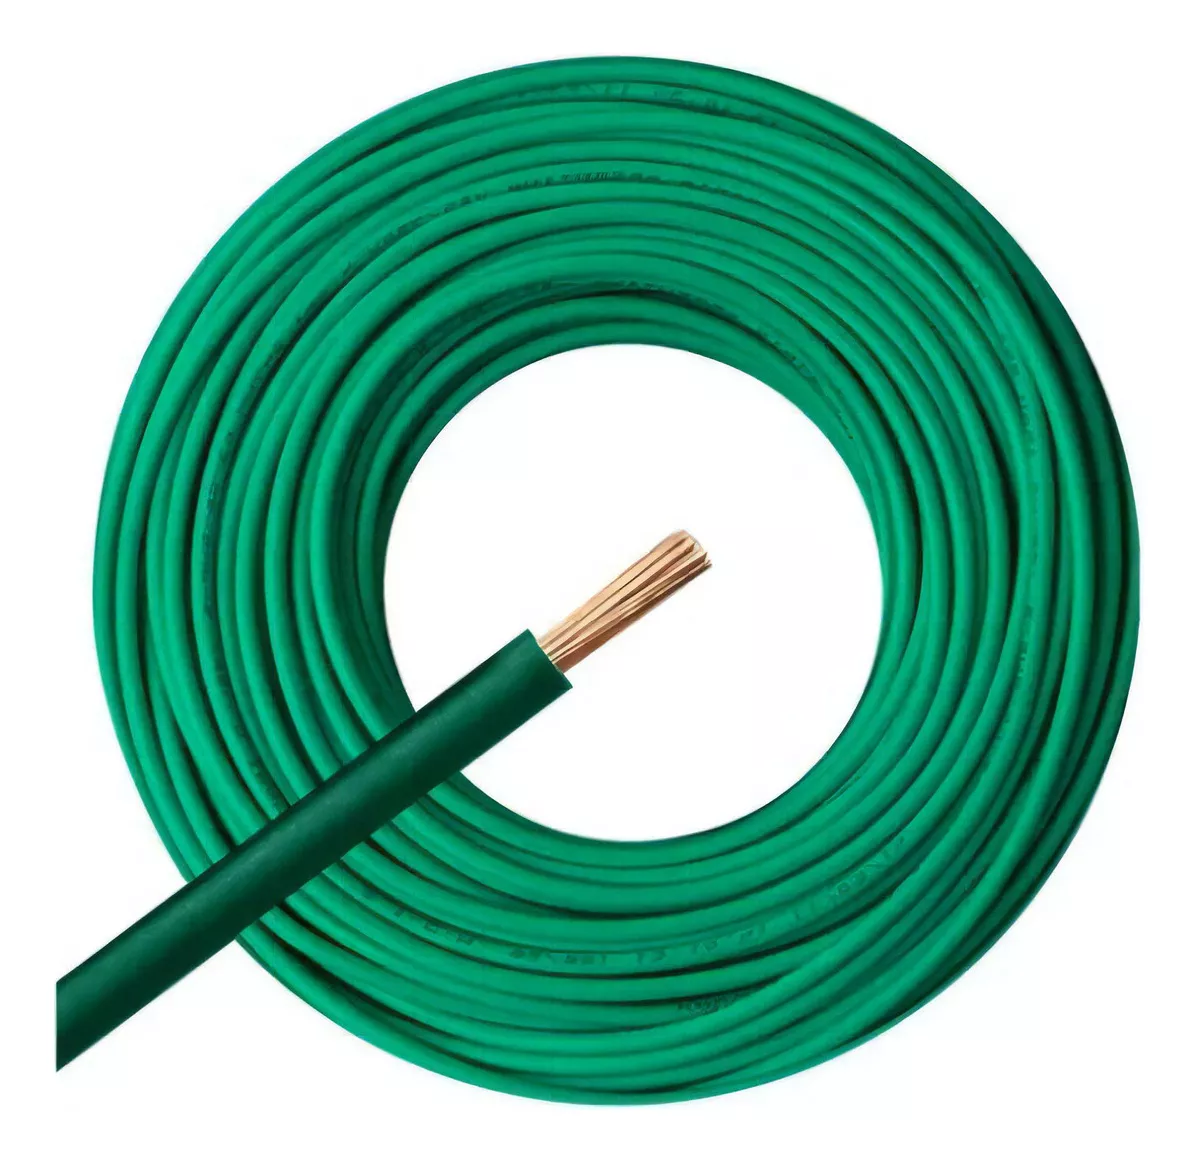 Tercera imagen para búsqueda de rollo cable 1.5 mm electricidad cables unipolares